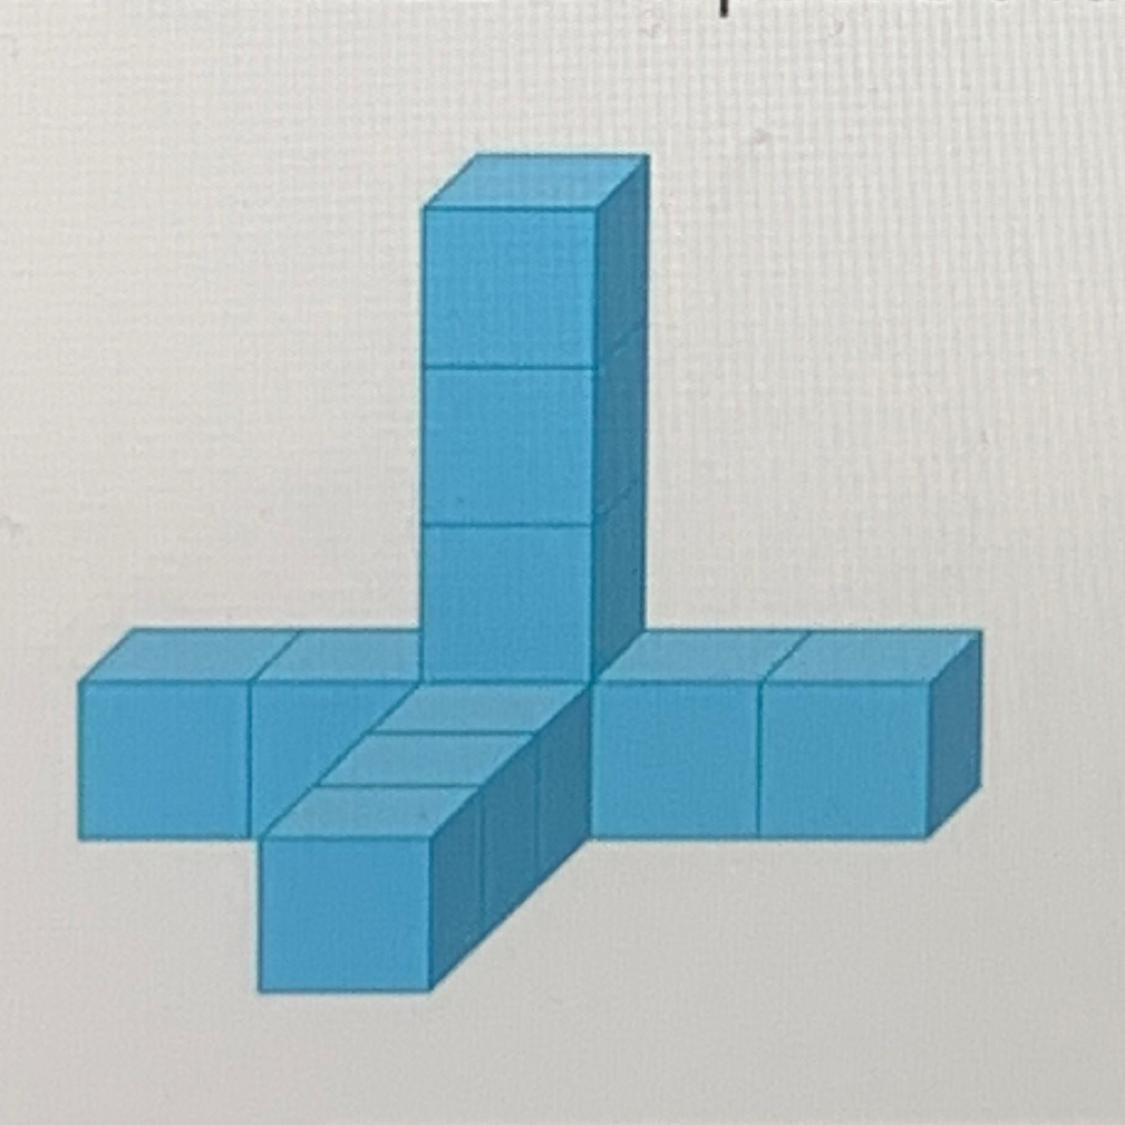 Из одинаковых кубиков изобразили стороны коробки. Фигуры из кубиков. Фигуры из одинаковых кубиков. Фигуру из одинаковых кубиков поместили в коробку. Изобразить фигуру из кубиков.